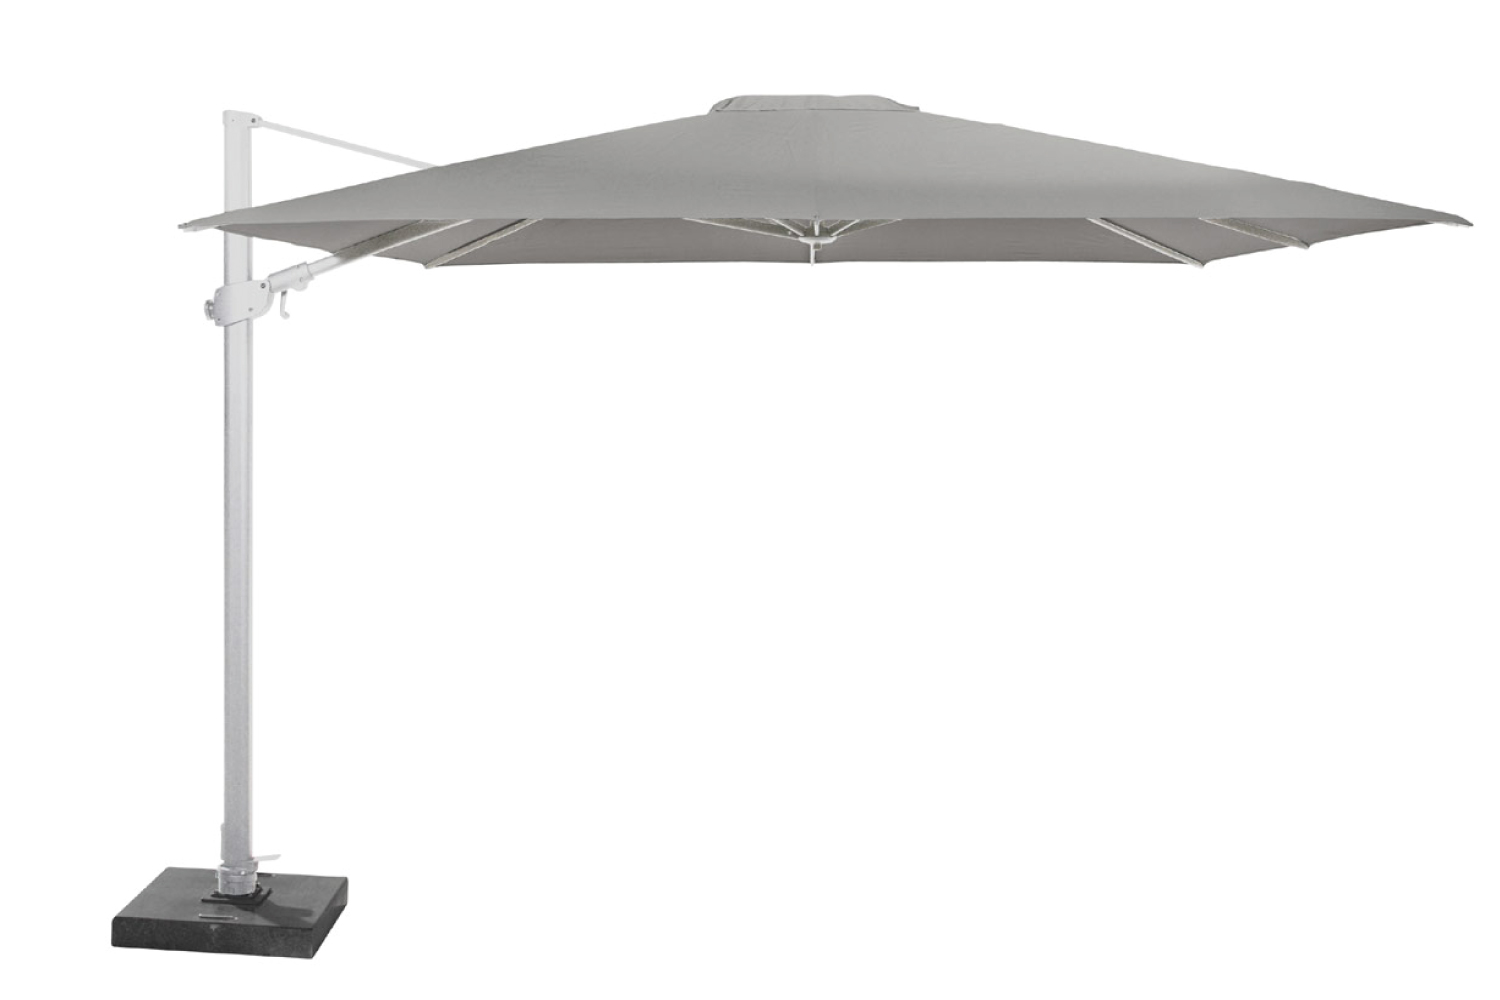 siesta parasol wit - 4 Seasons Siesta parasol met wit frame